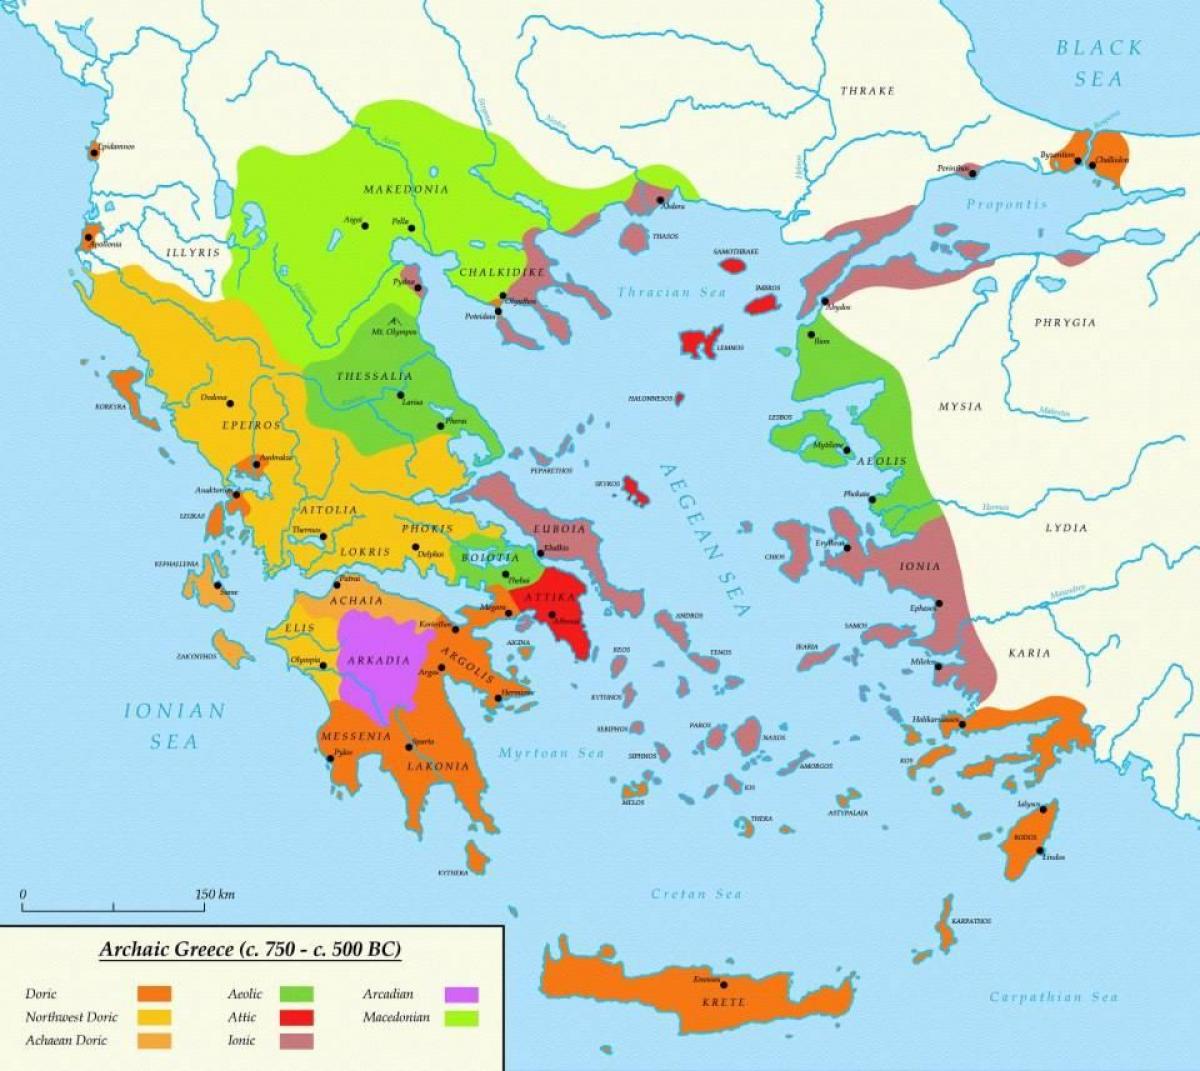 antiikin kreikka kartta Ateenan Antiikin Kreikka Kartta Kartta Ateena Ja Sparta Antiikin Kreikka Kreikka antiikin kreikka kartta